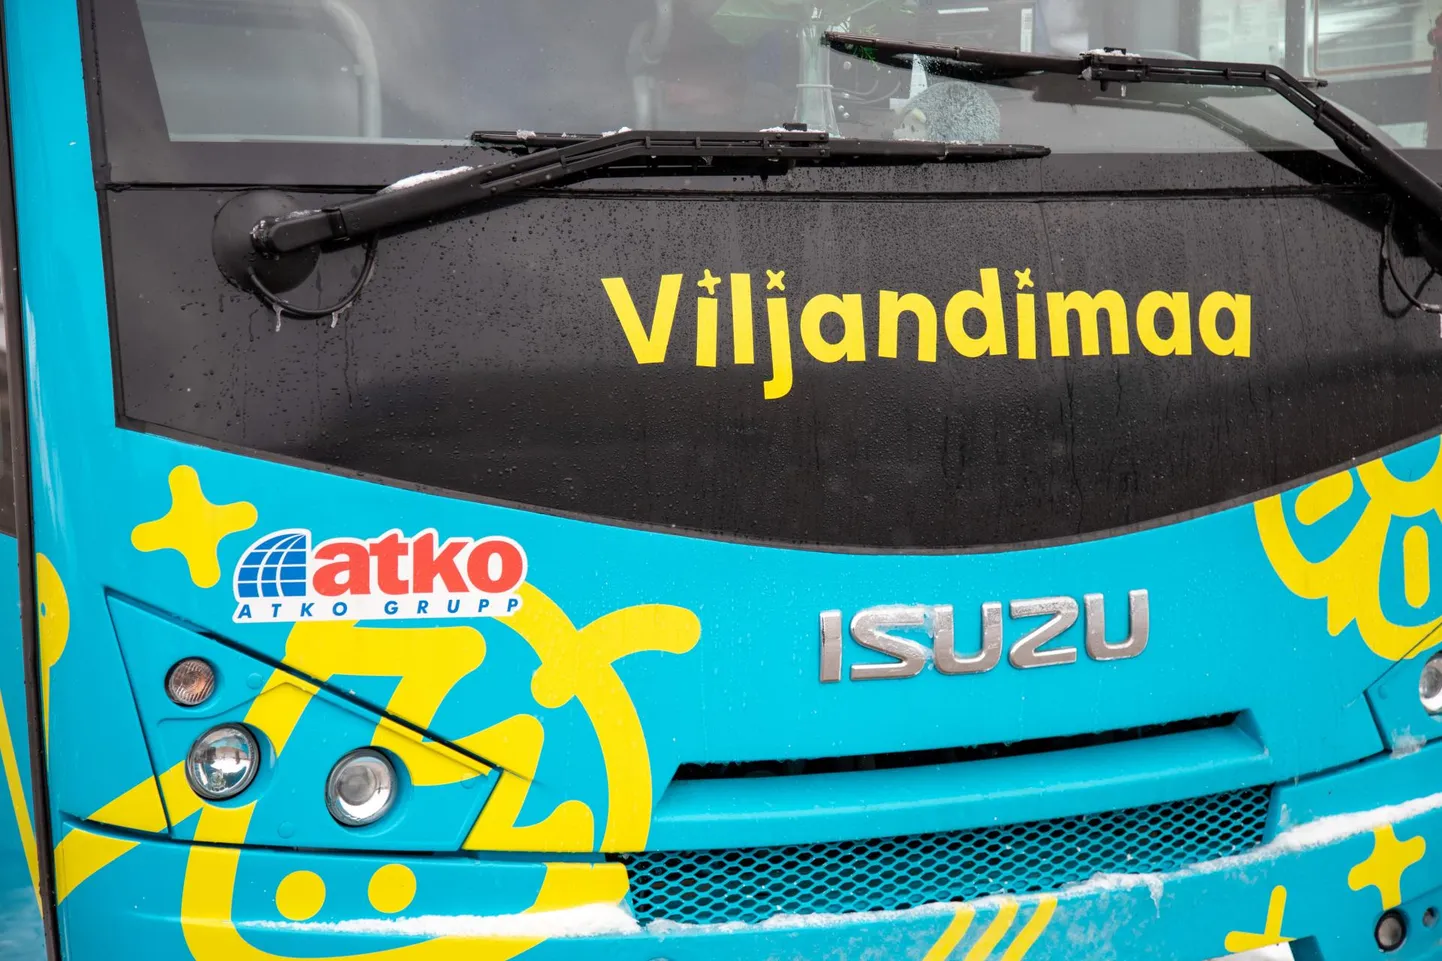 Viljandimaal sõitvad Atko bussid on värvitud eriilmeliselt ning teist värvi busse ettevõte maakonnas kasutada ei tohi.